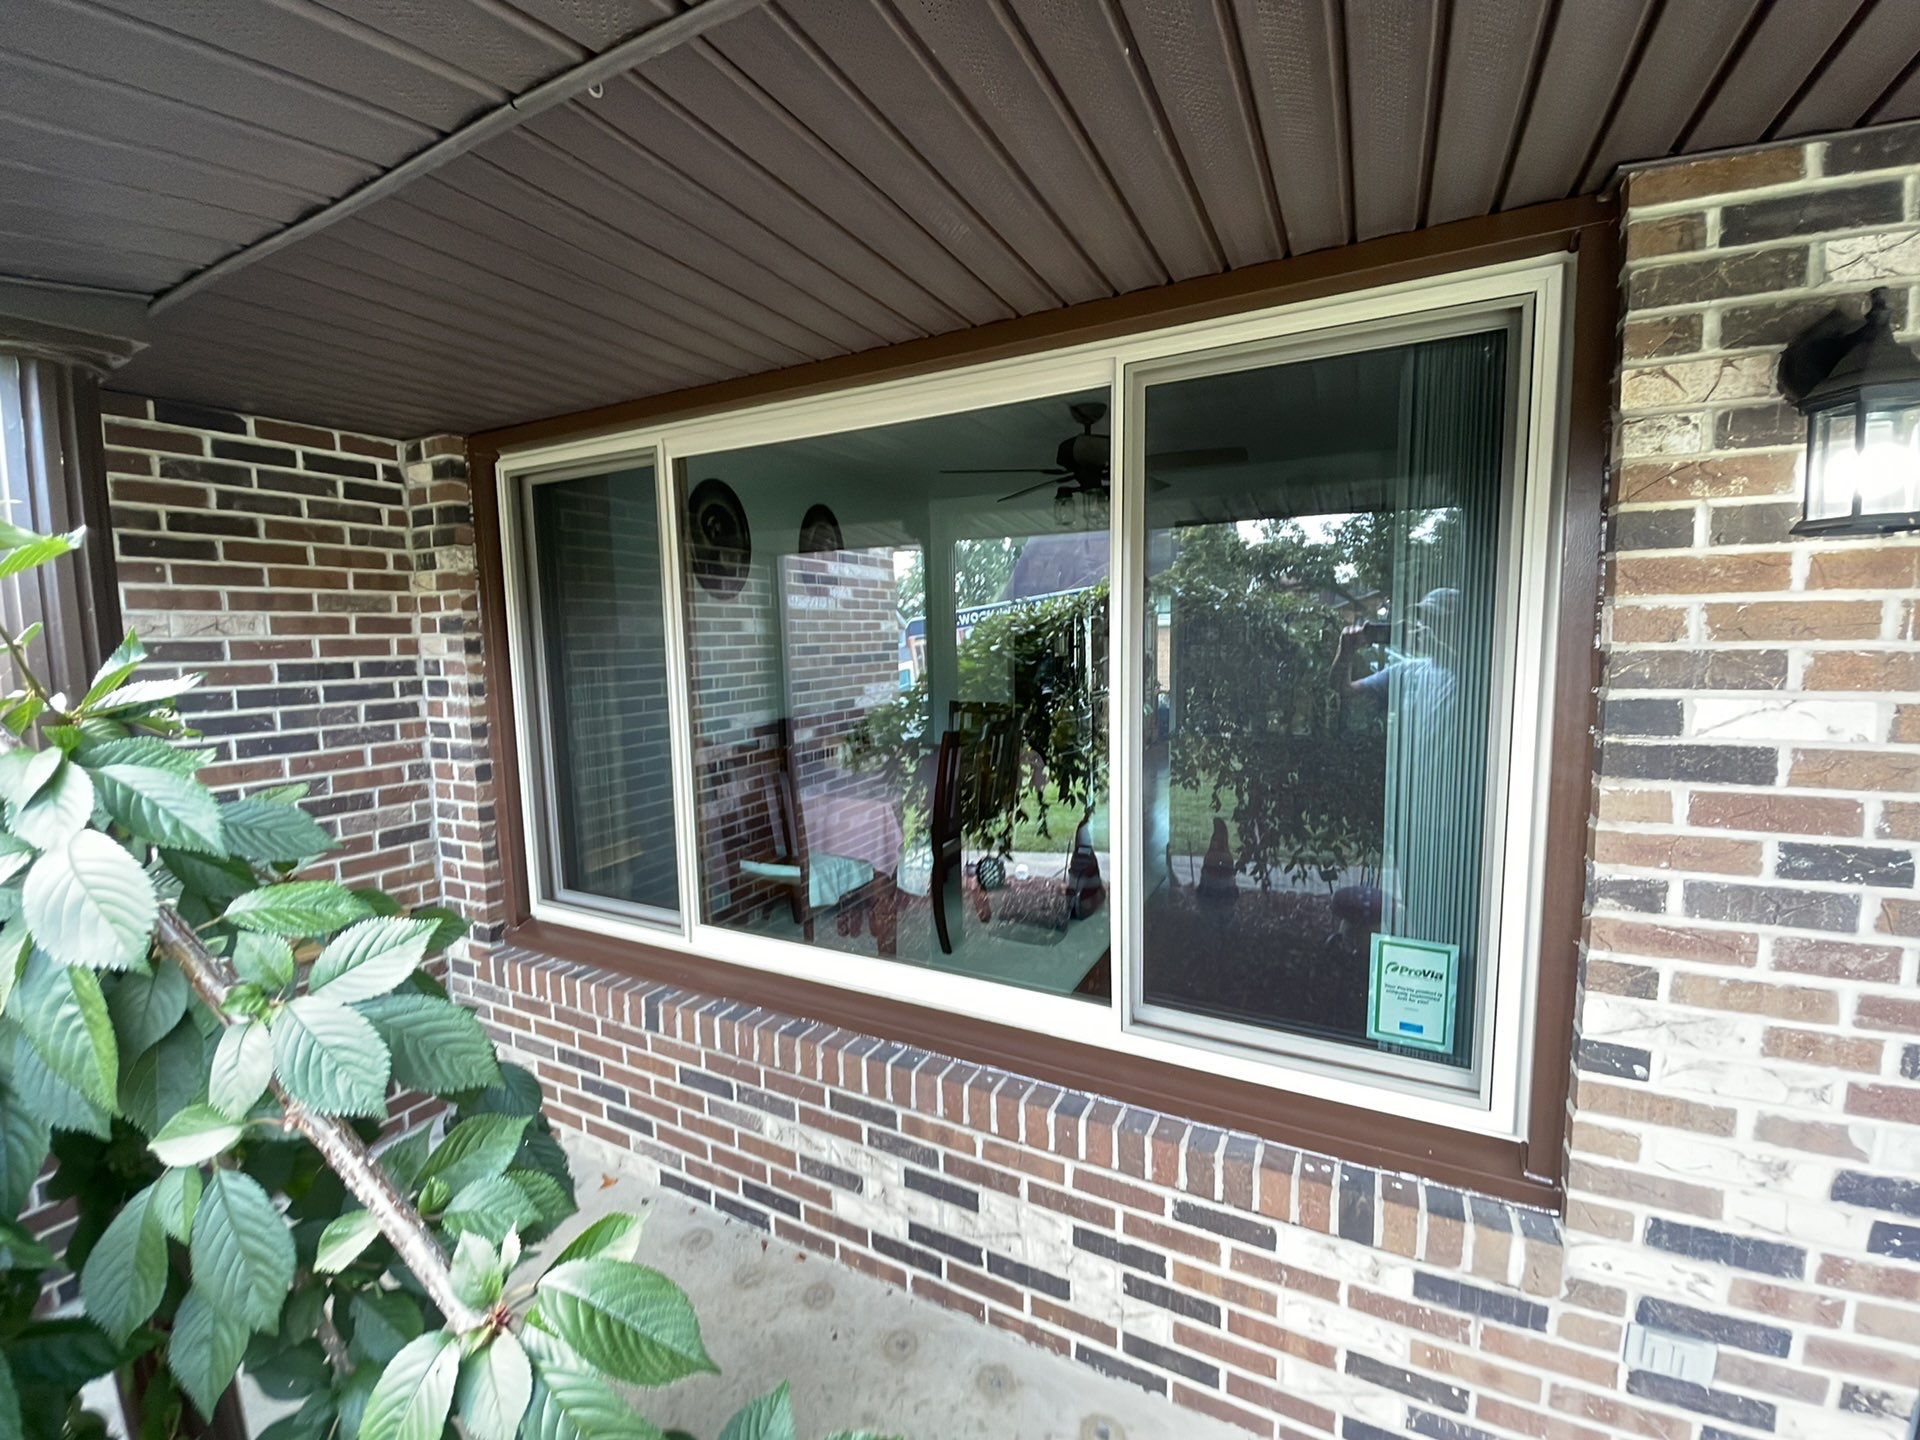 New window in Jeannette